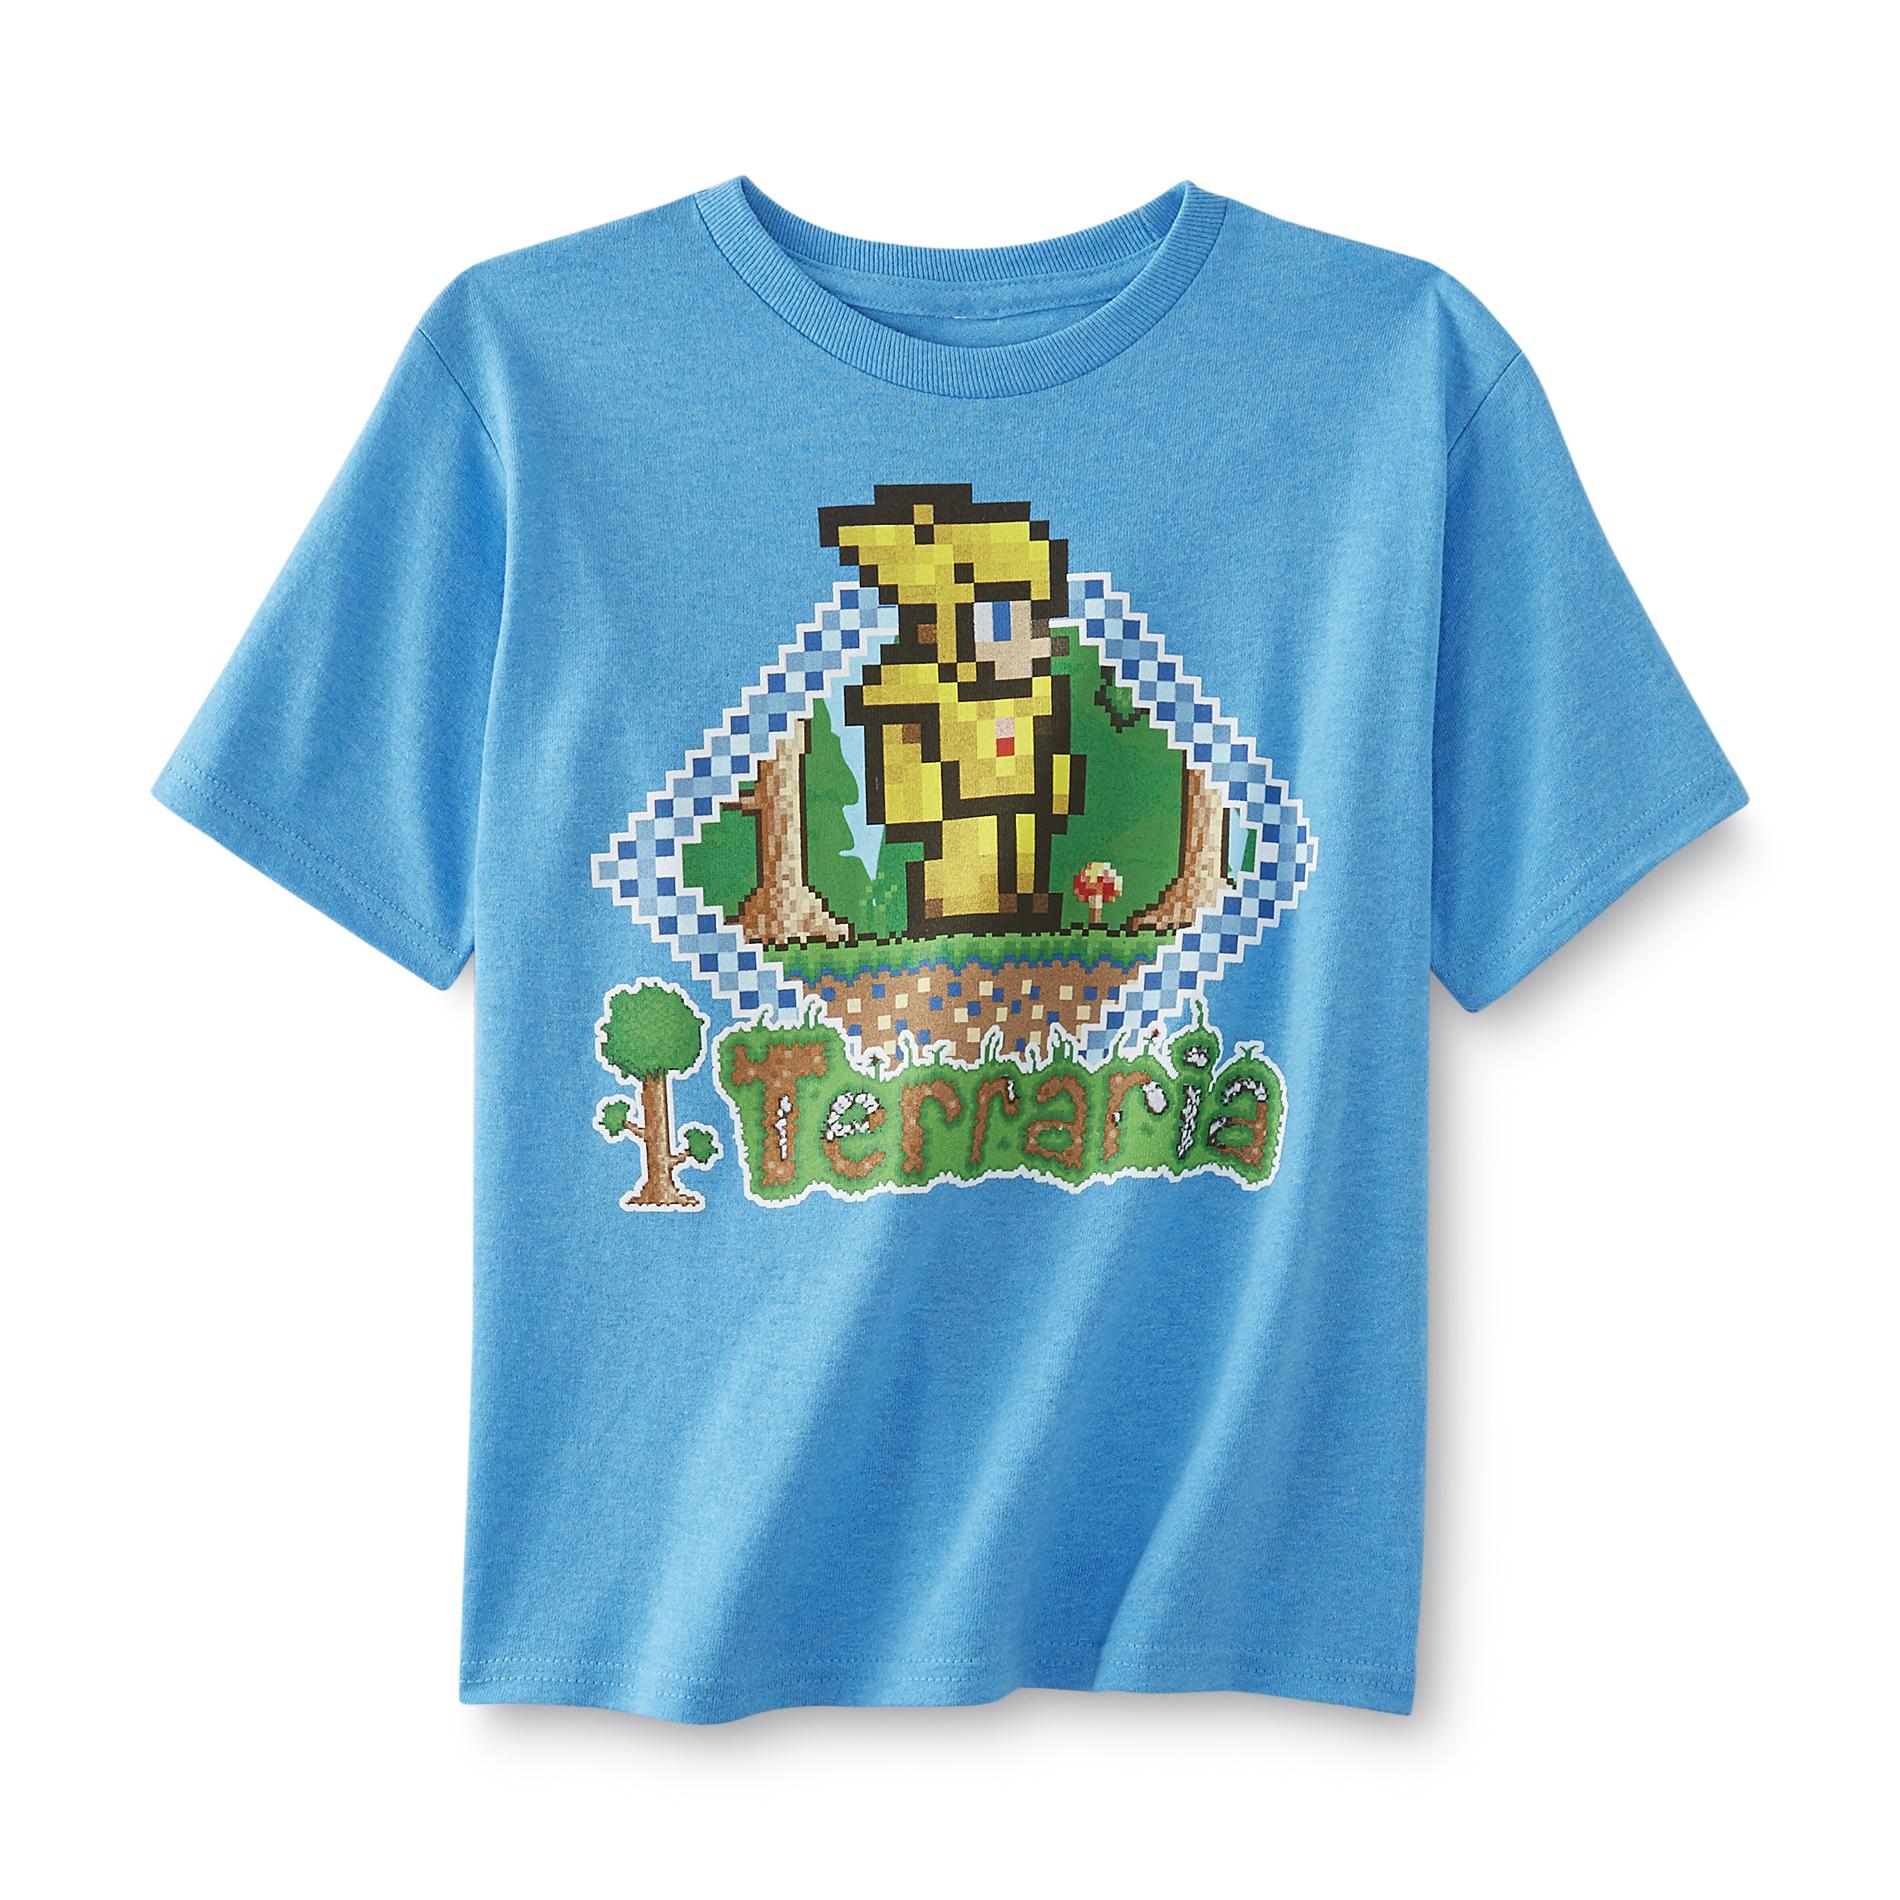 Boy's Graphic T-Shirt - Terraria